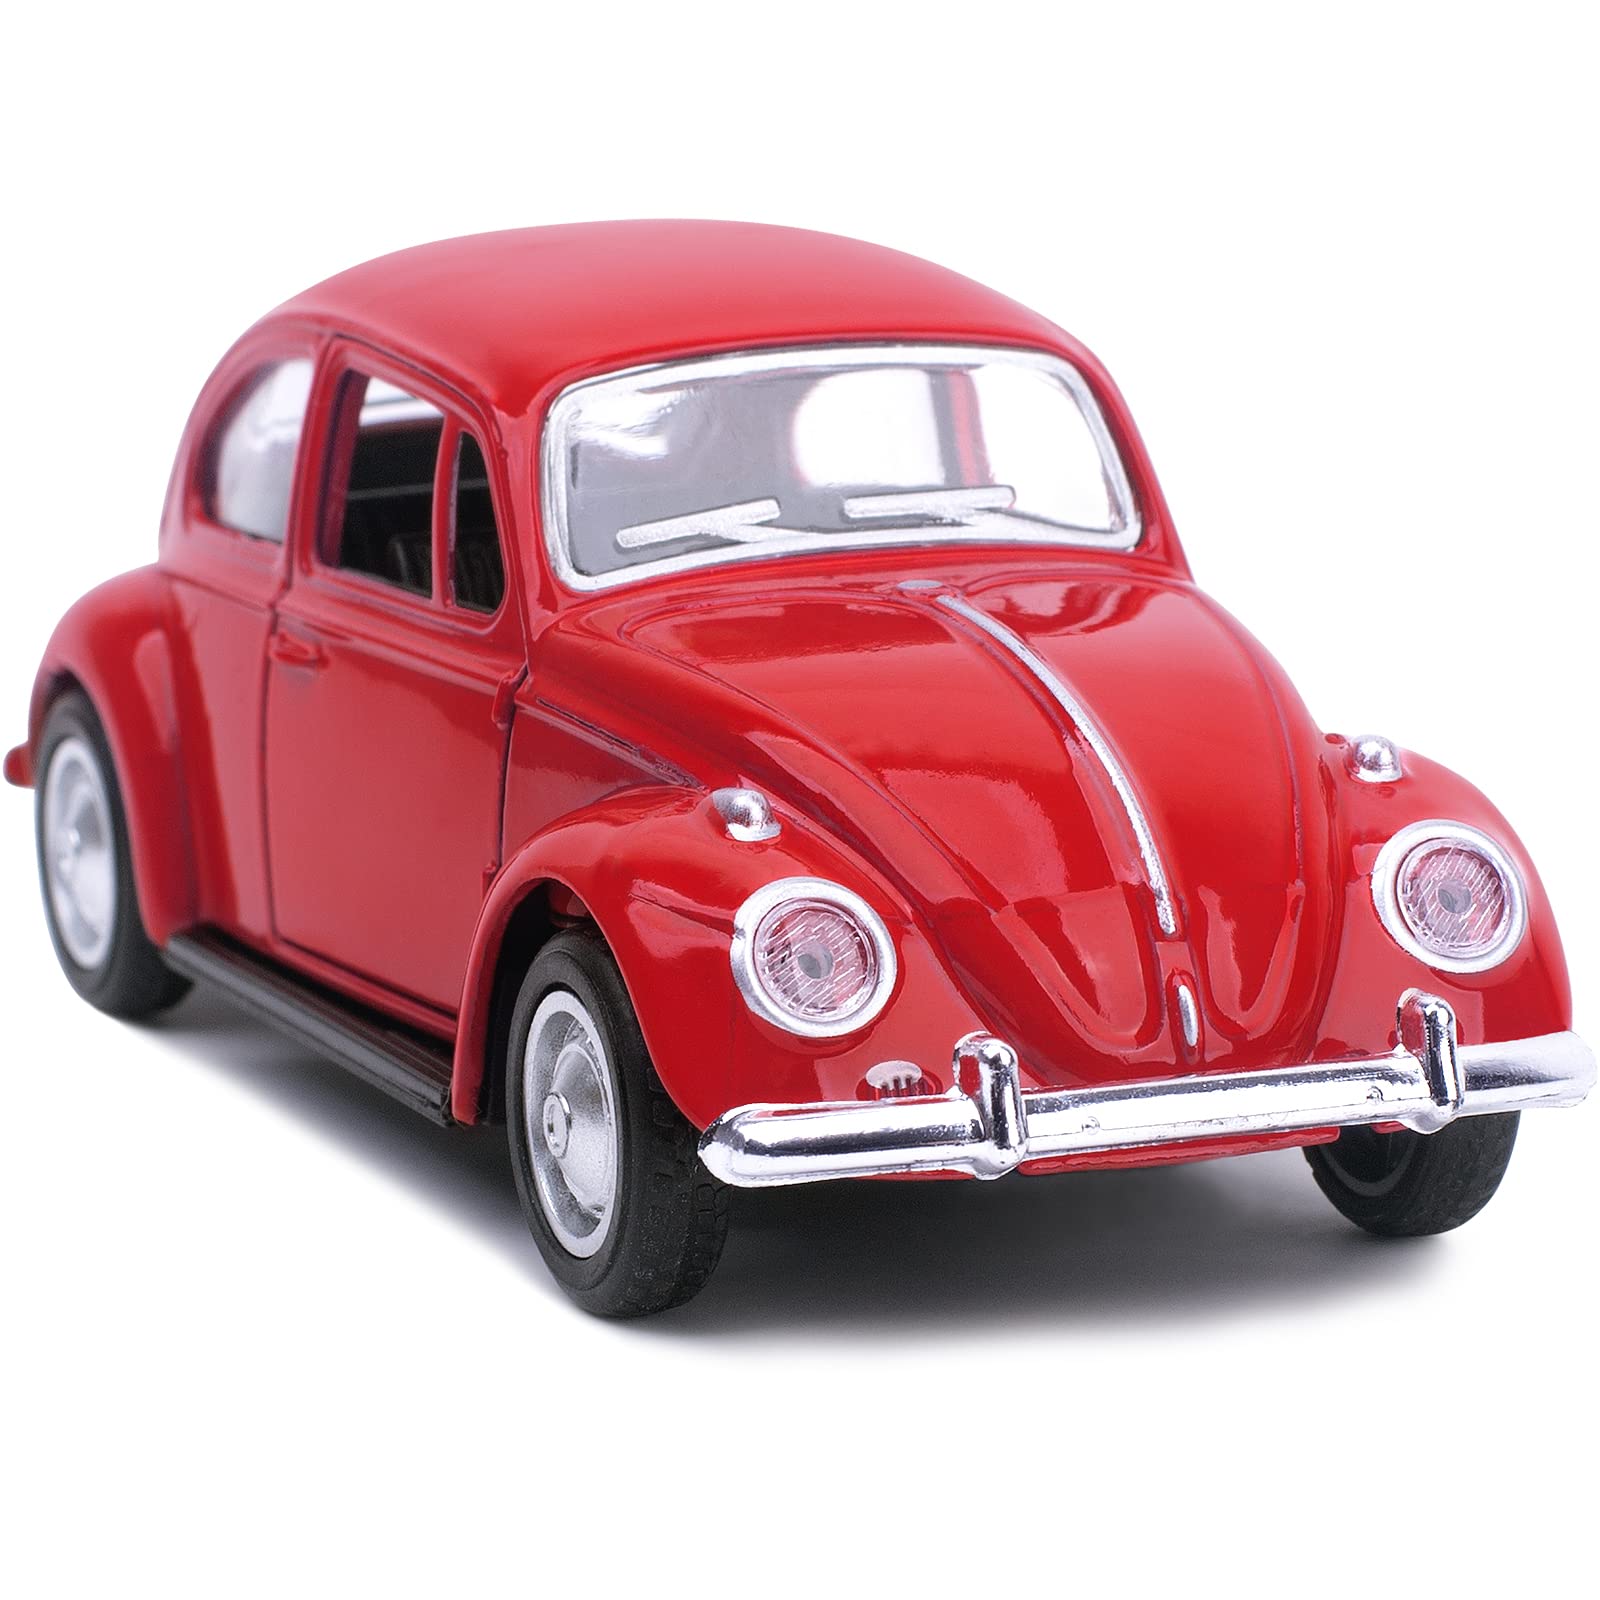 Màu Vàng Cổ Điển Vw Volkswagen Beetle Retro Xe Hẹn Giờ Cũ Đậu Trên Đường  Phố Hình ảnh Sẵn có  Tải xuống Hình ảnh Ngay bây giờ  iStock